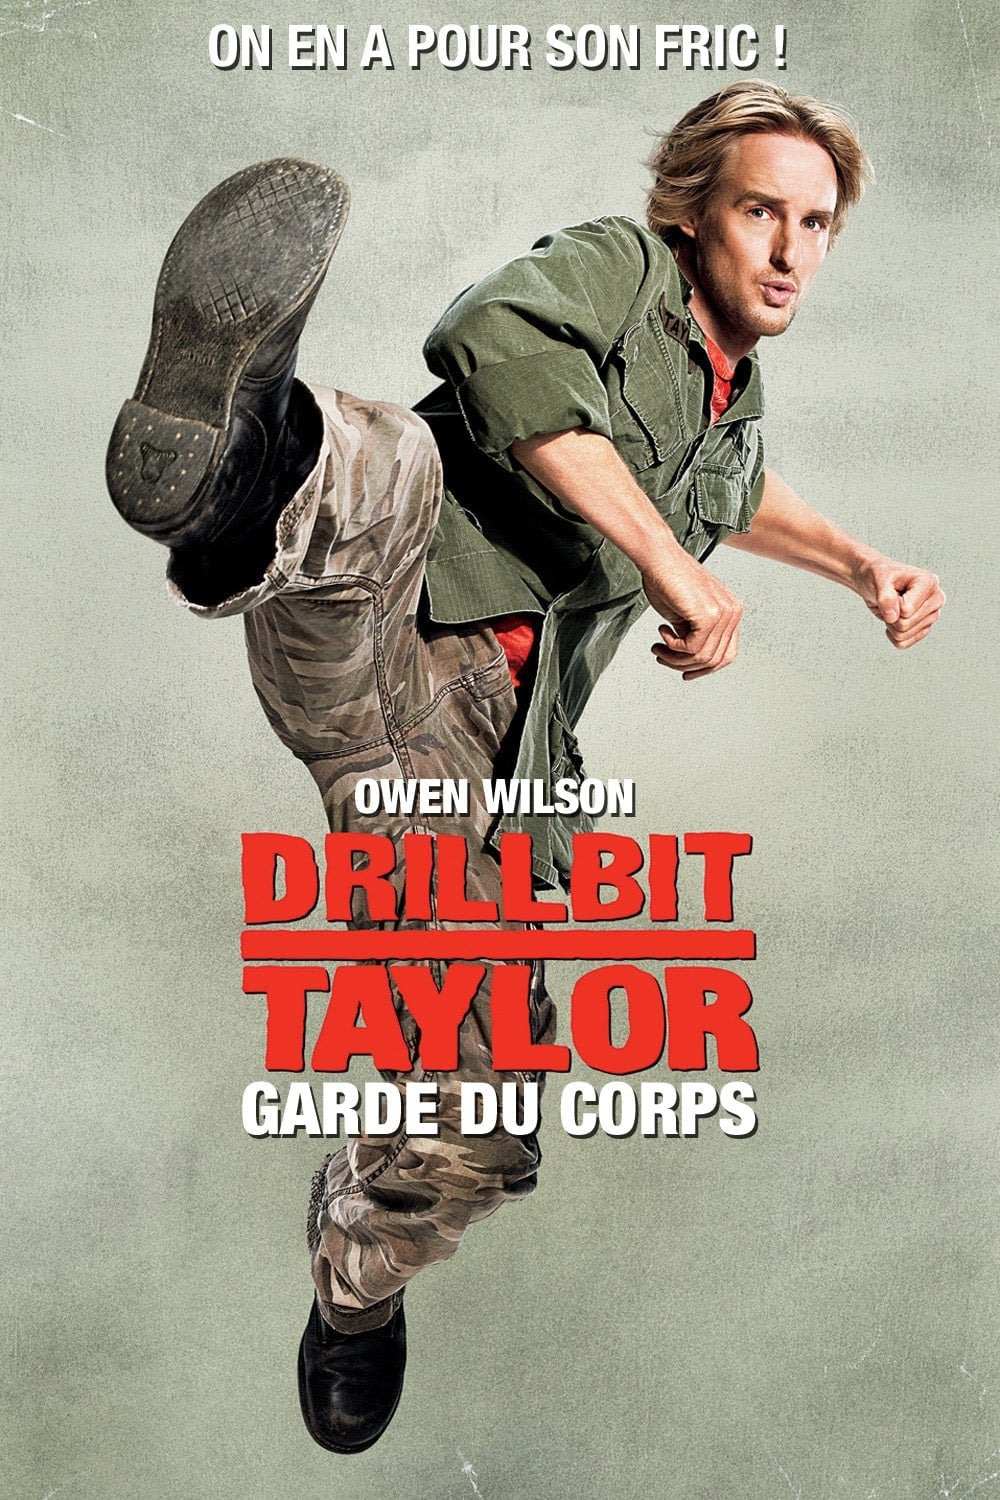 Drillbit Taylor, garde du corps est-il disponible sur Netflix ou autre ?